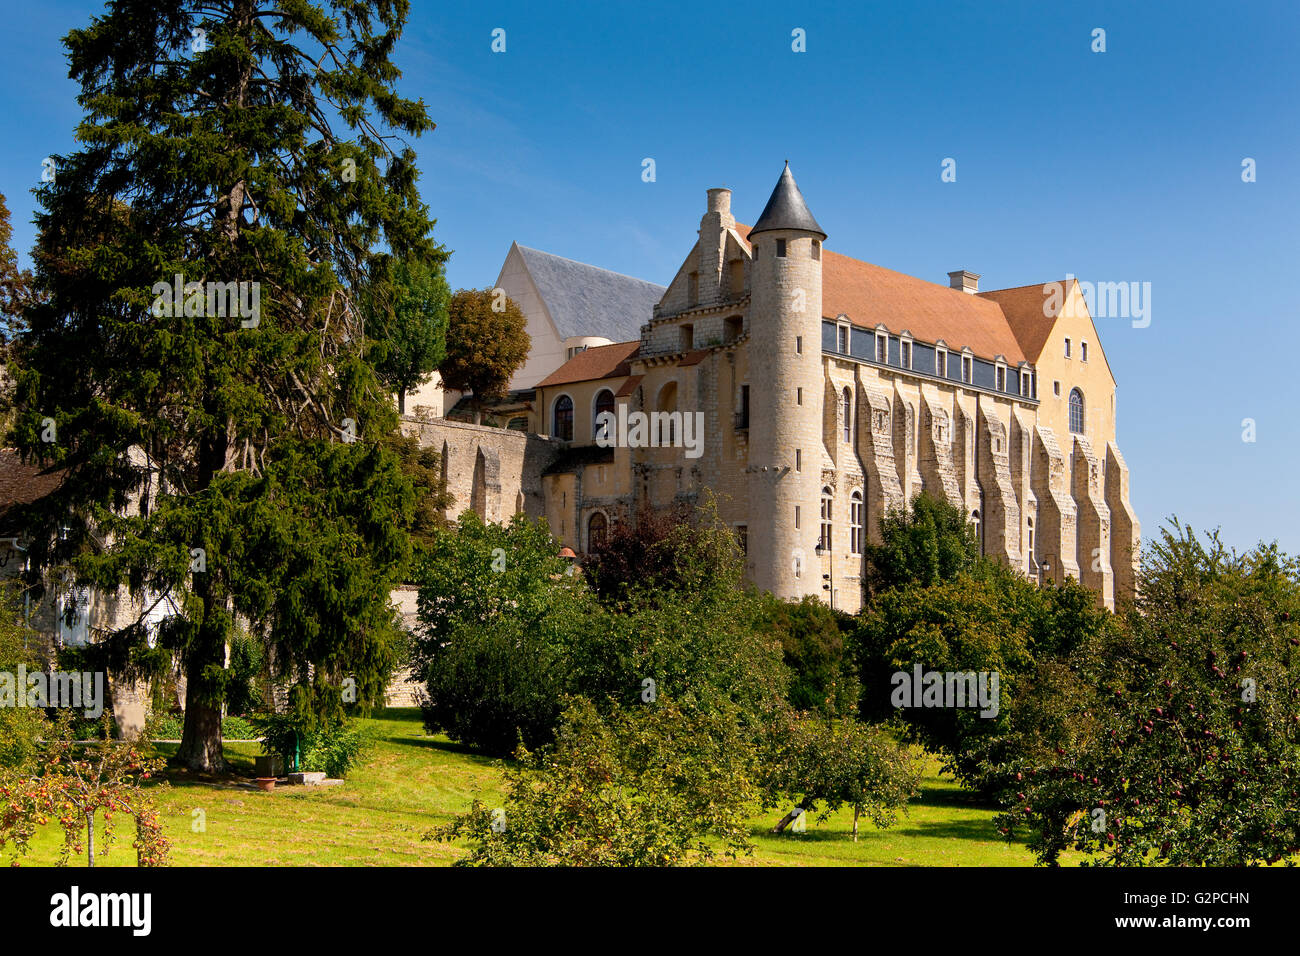 Abbey Saint-Séverin, Château Landon, France Stock Photo